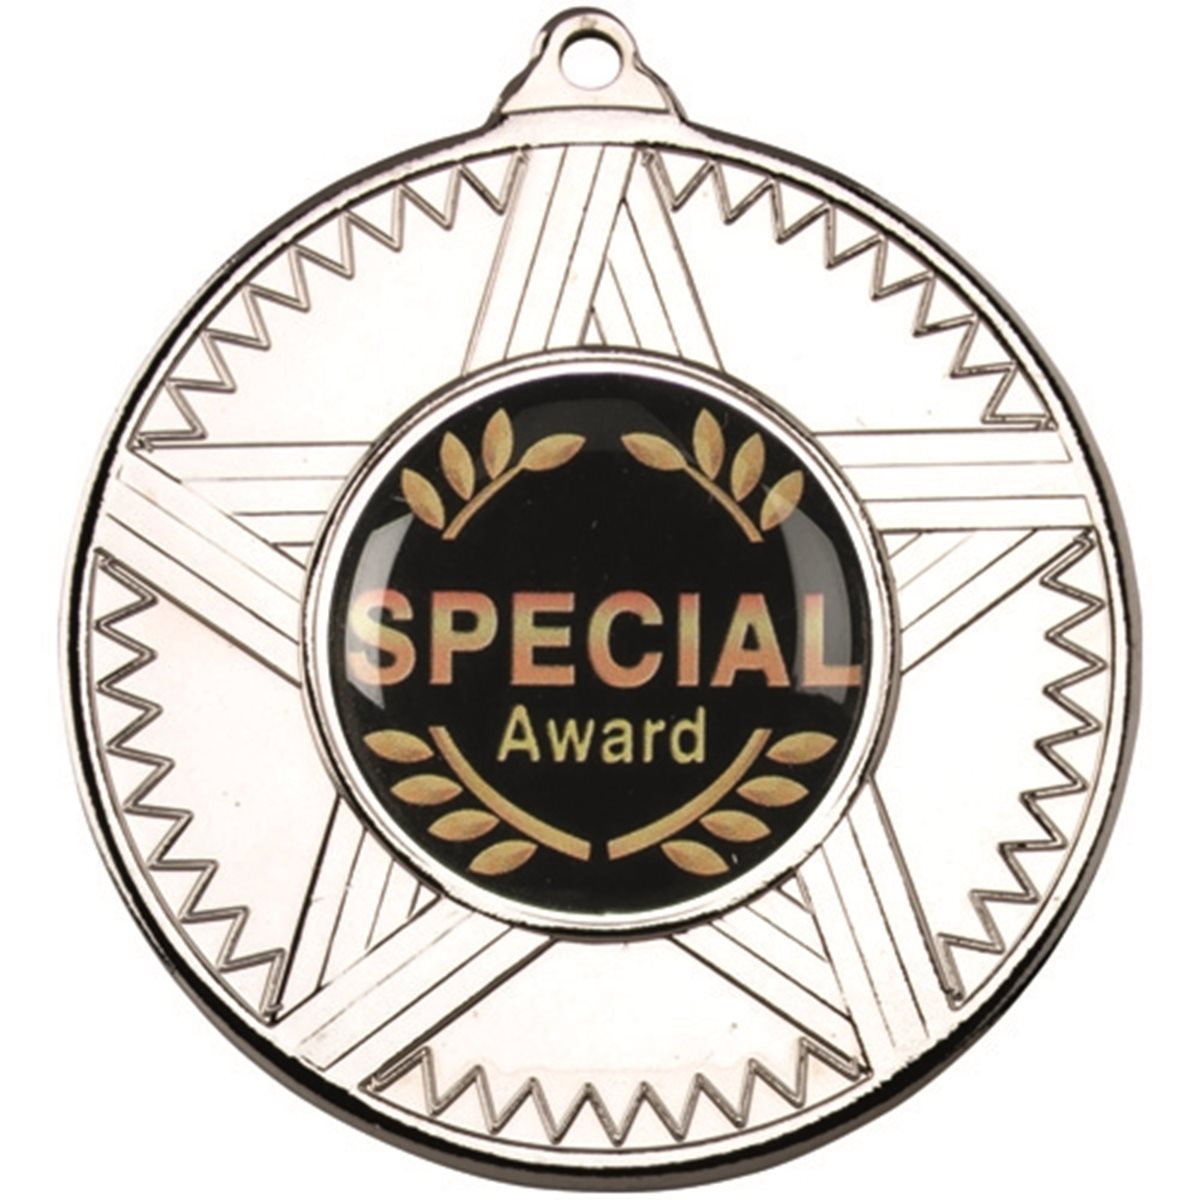 Special Award s.jpg